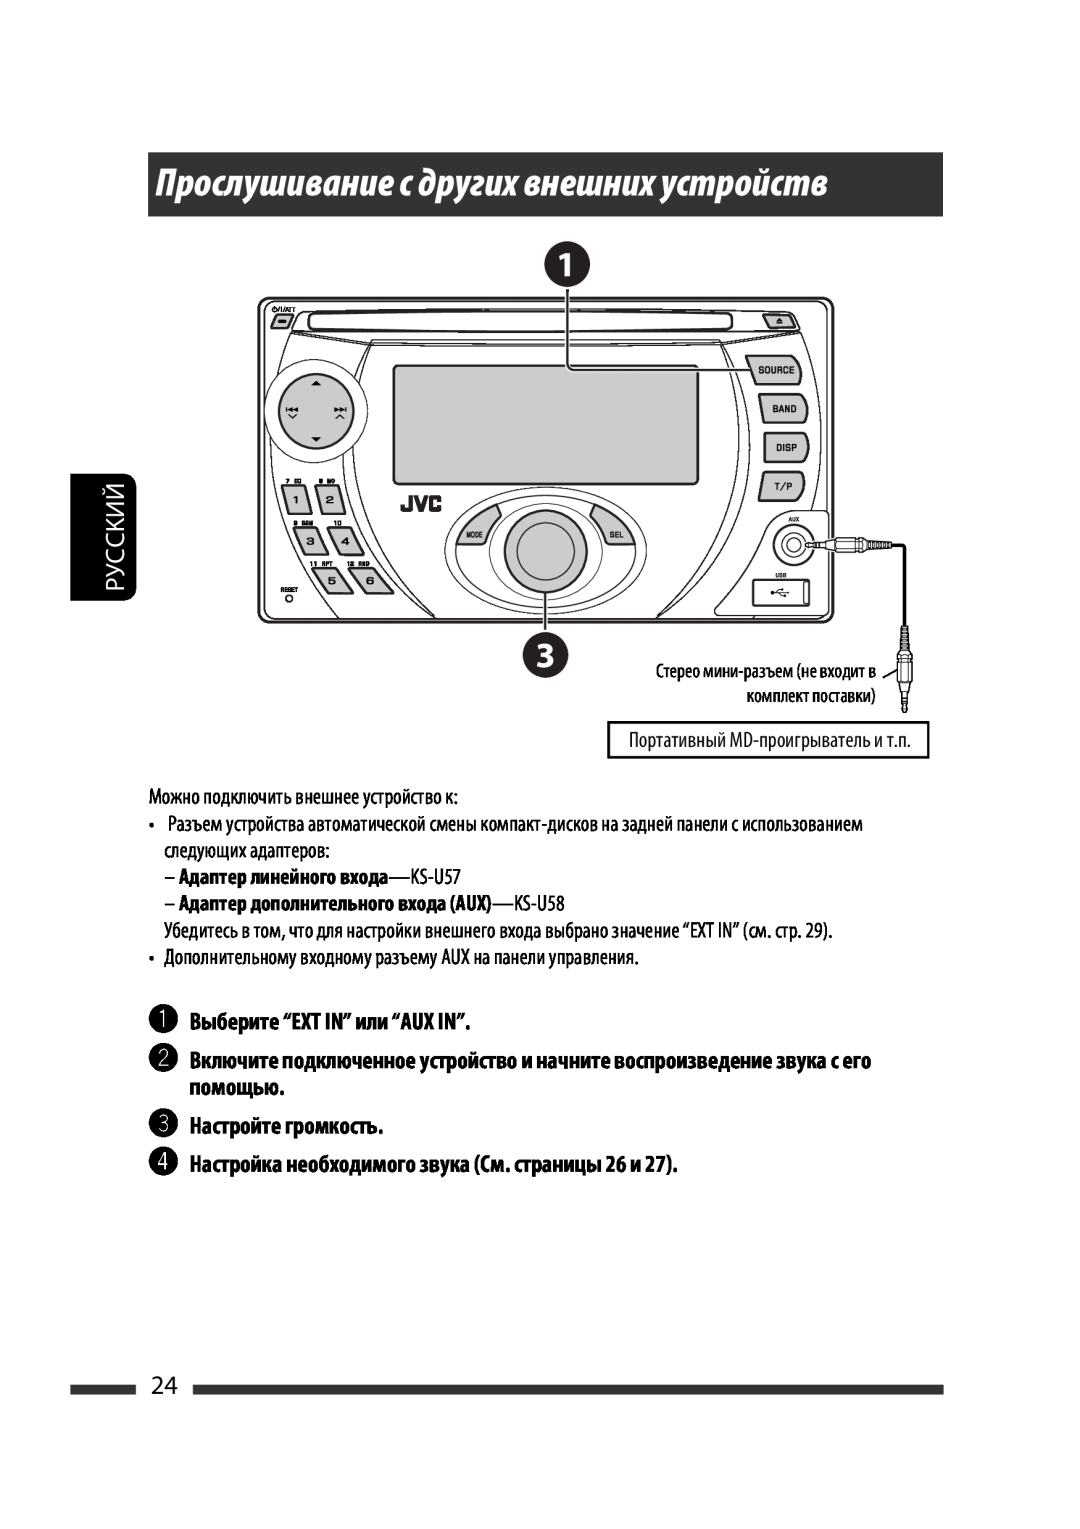 JVC KW-XG701 manual Прослушивание с других внешних устройств, ~Выберите “EXT IN” или “AUX IN”, Настройте громкость, Руcckий 